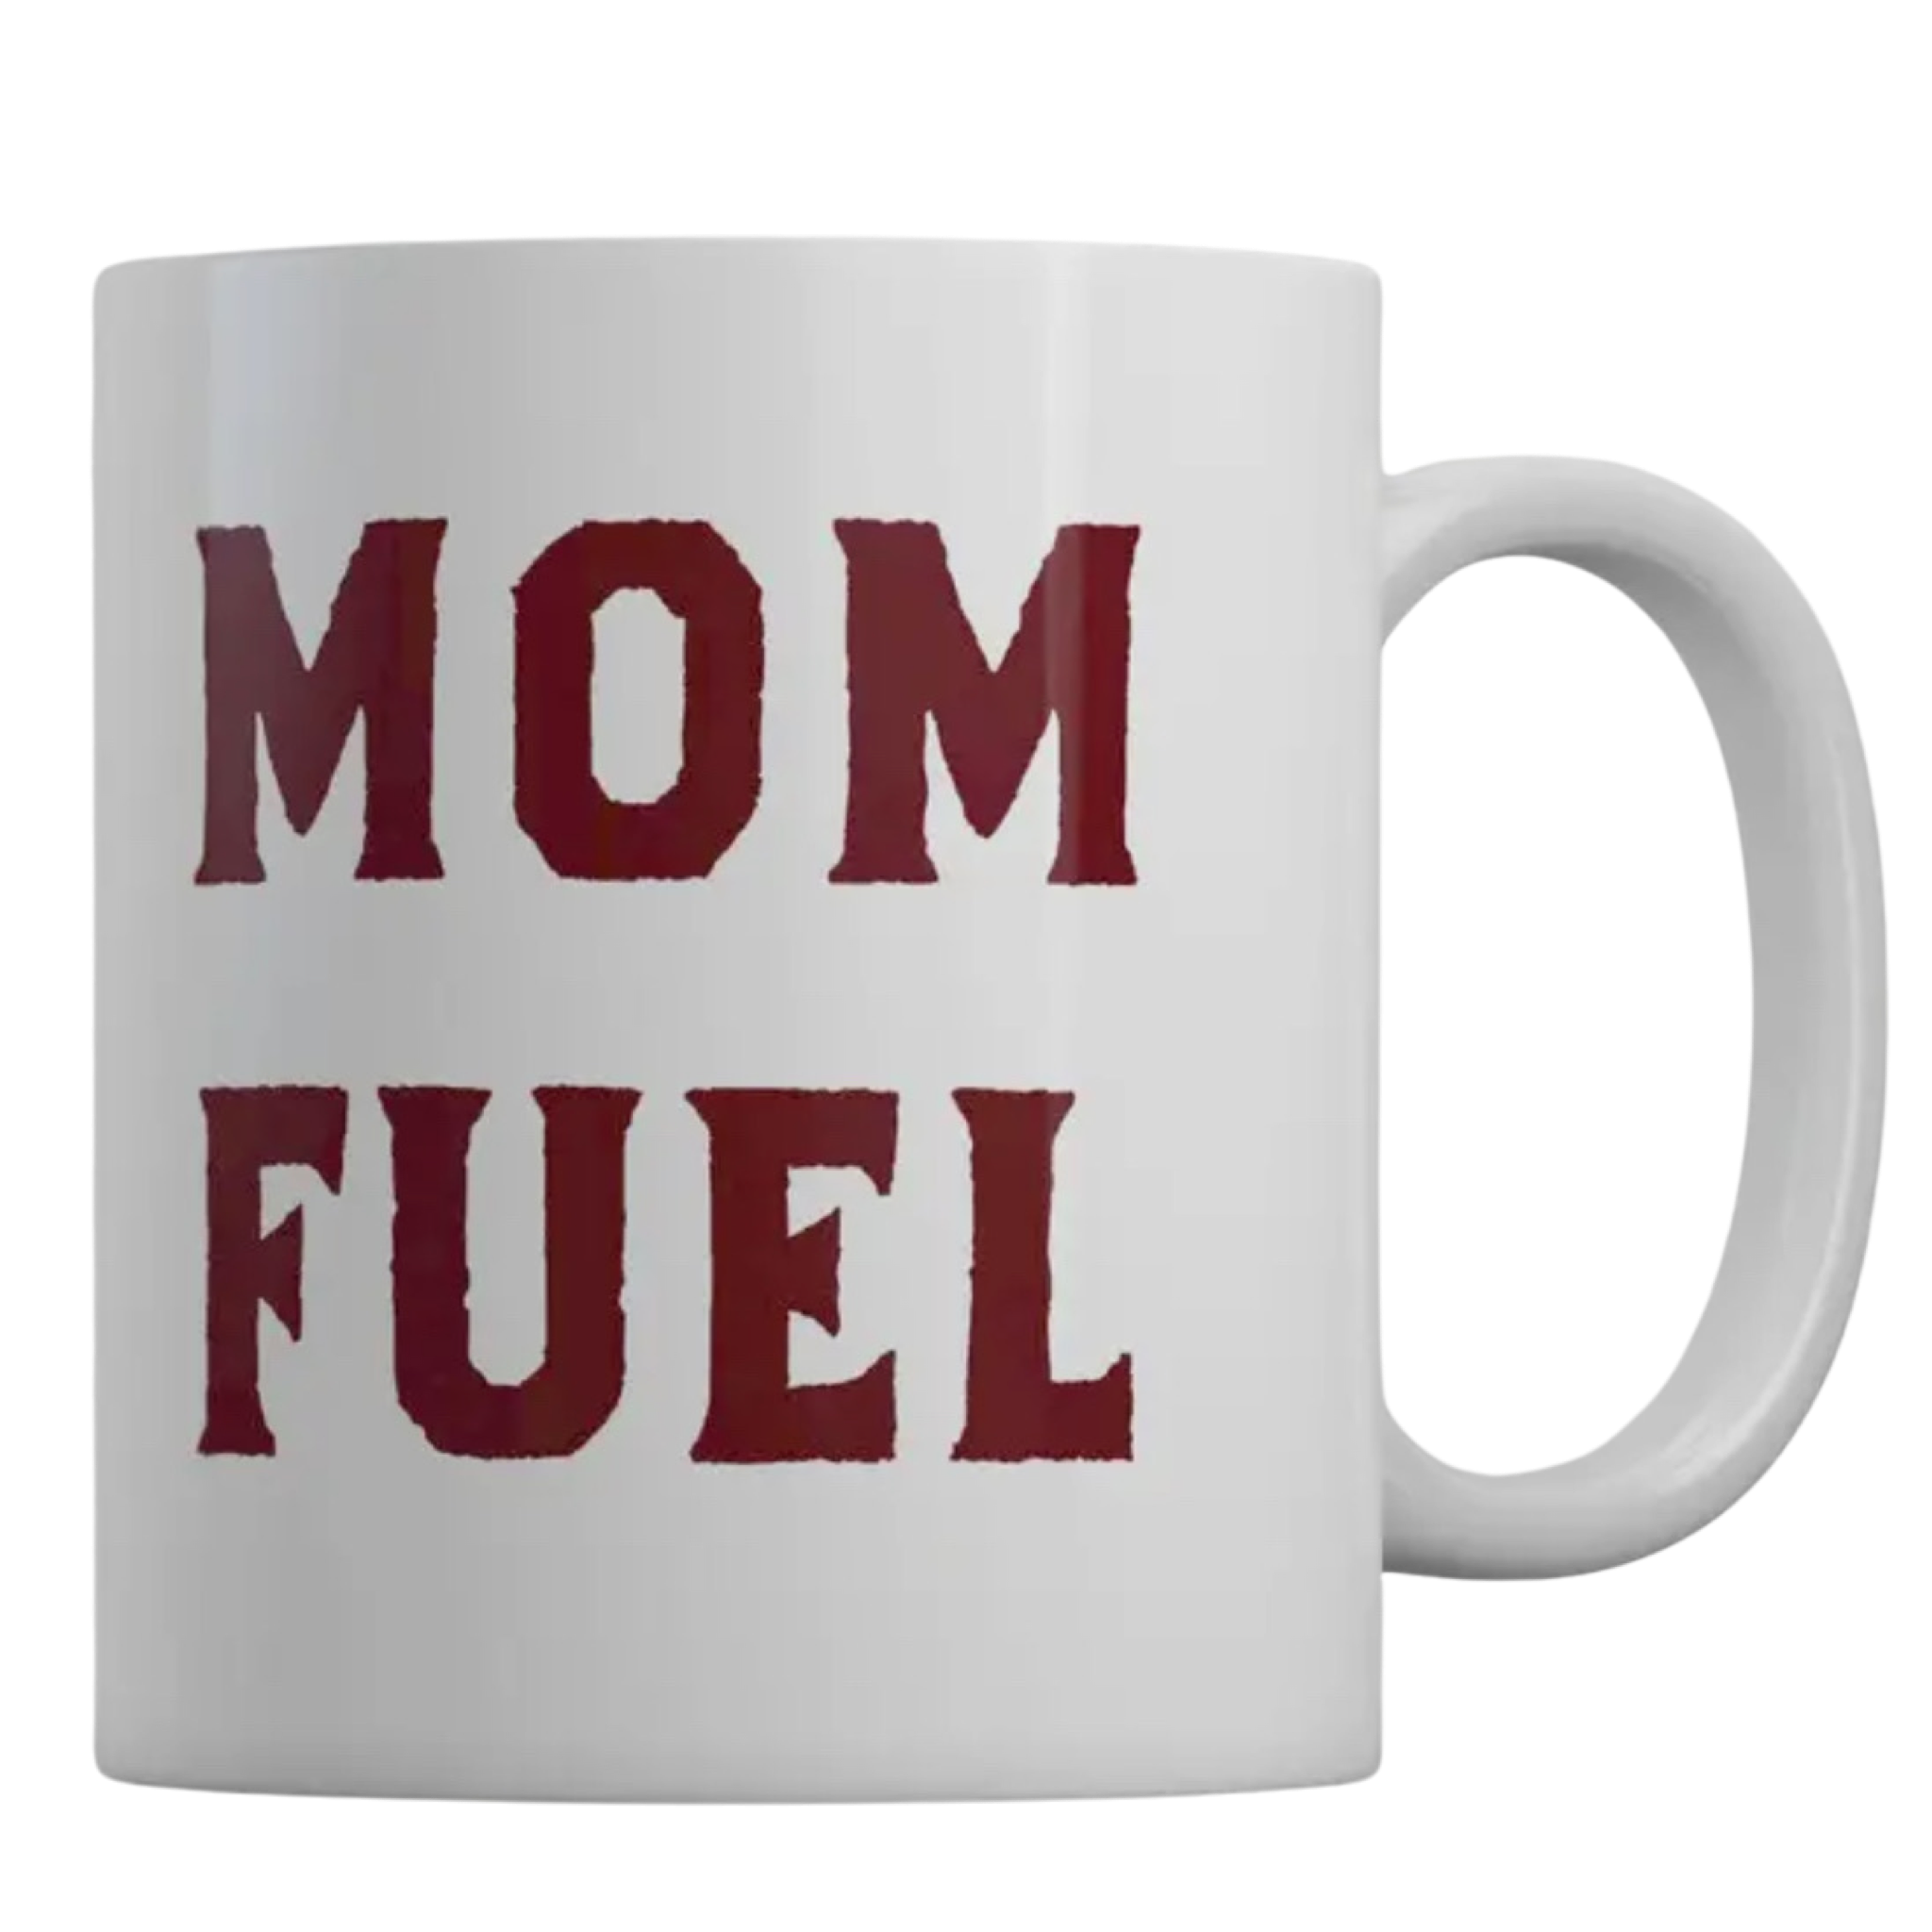 Mom Fuel mug